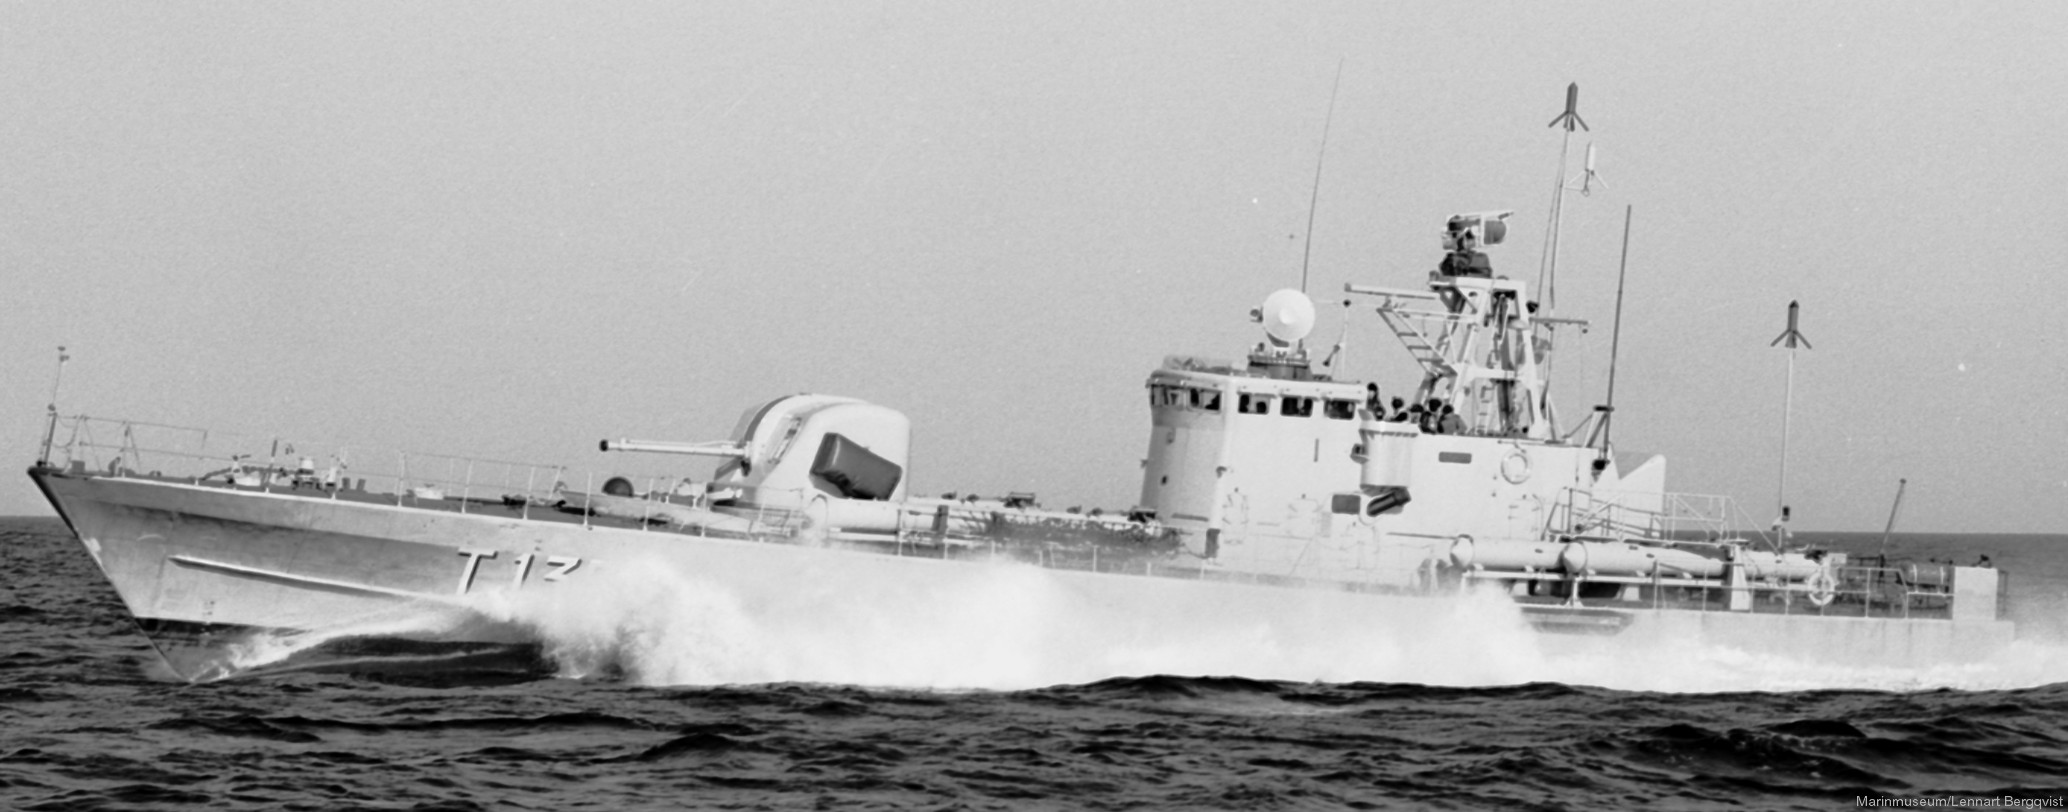 t135 västeras hswms hms norrköping class fast attack craft torpedo missile patrol boat swedish navy svenska marinen 03